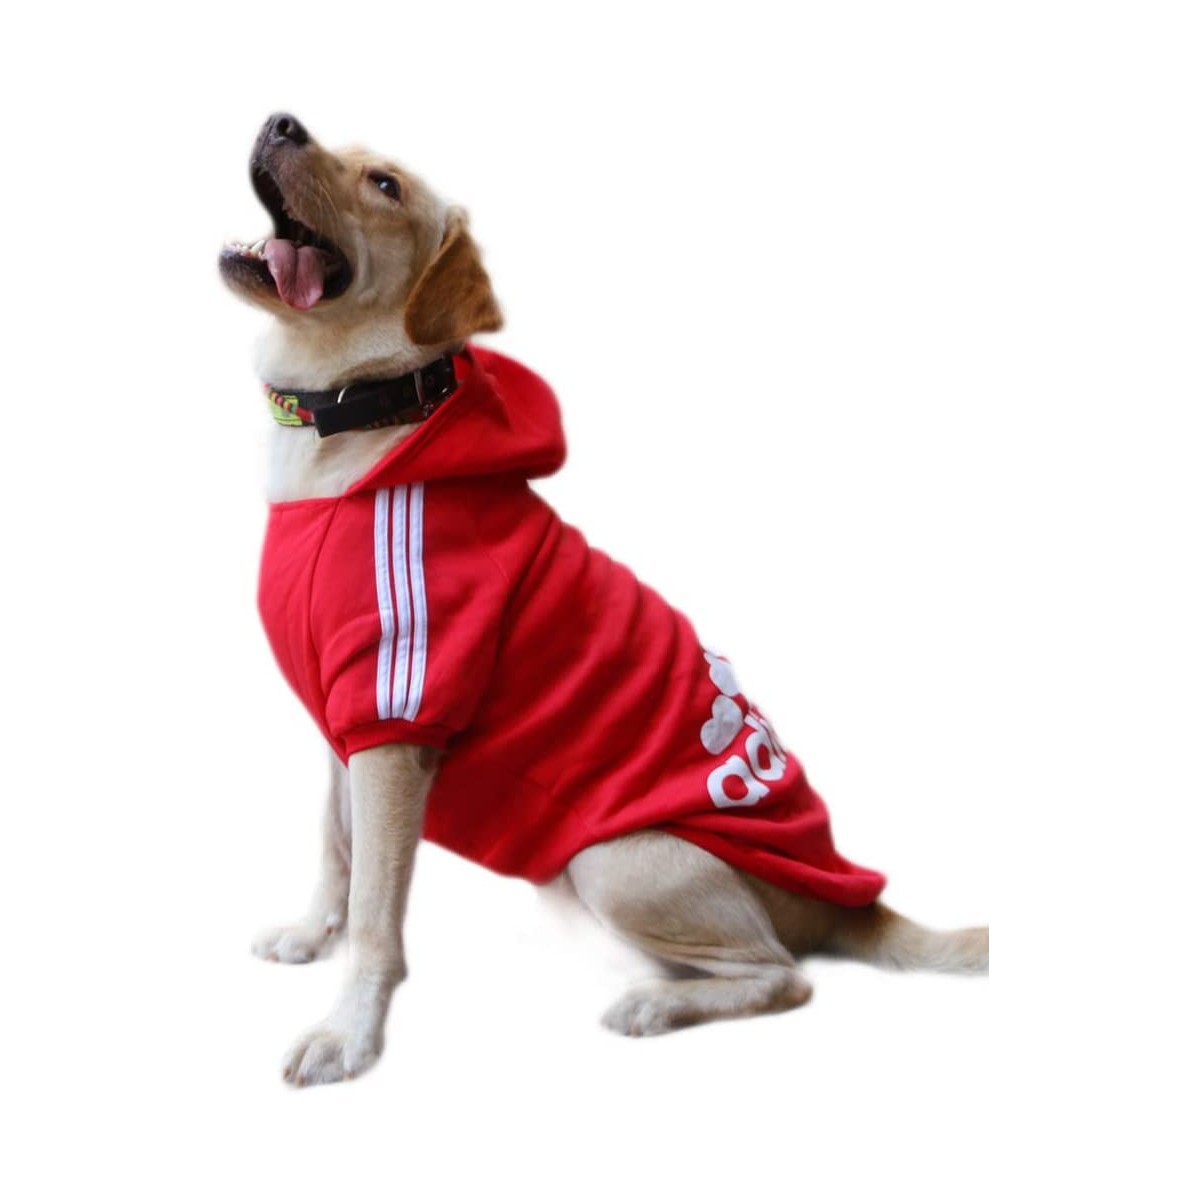 Recuperar giratorio acerca de Felpa per cani Adidog / Adidas colore rosso, con cappuccio